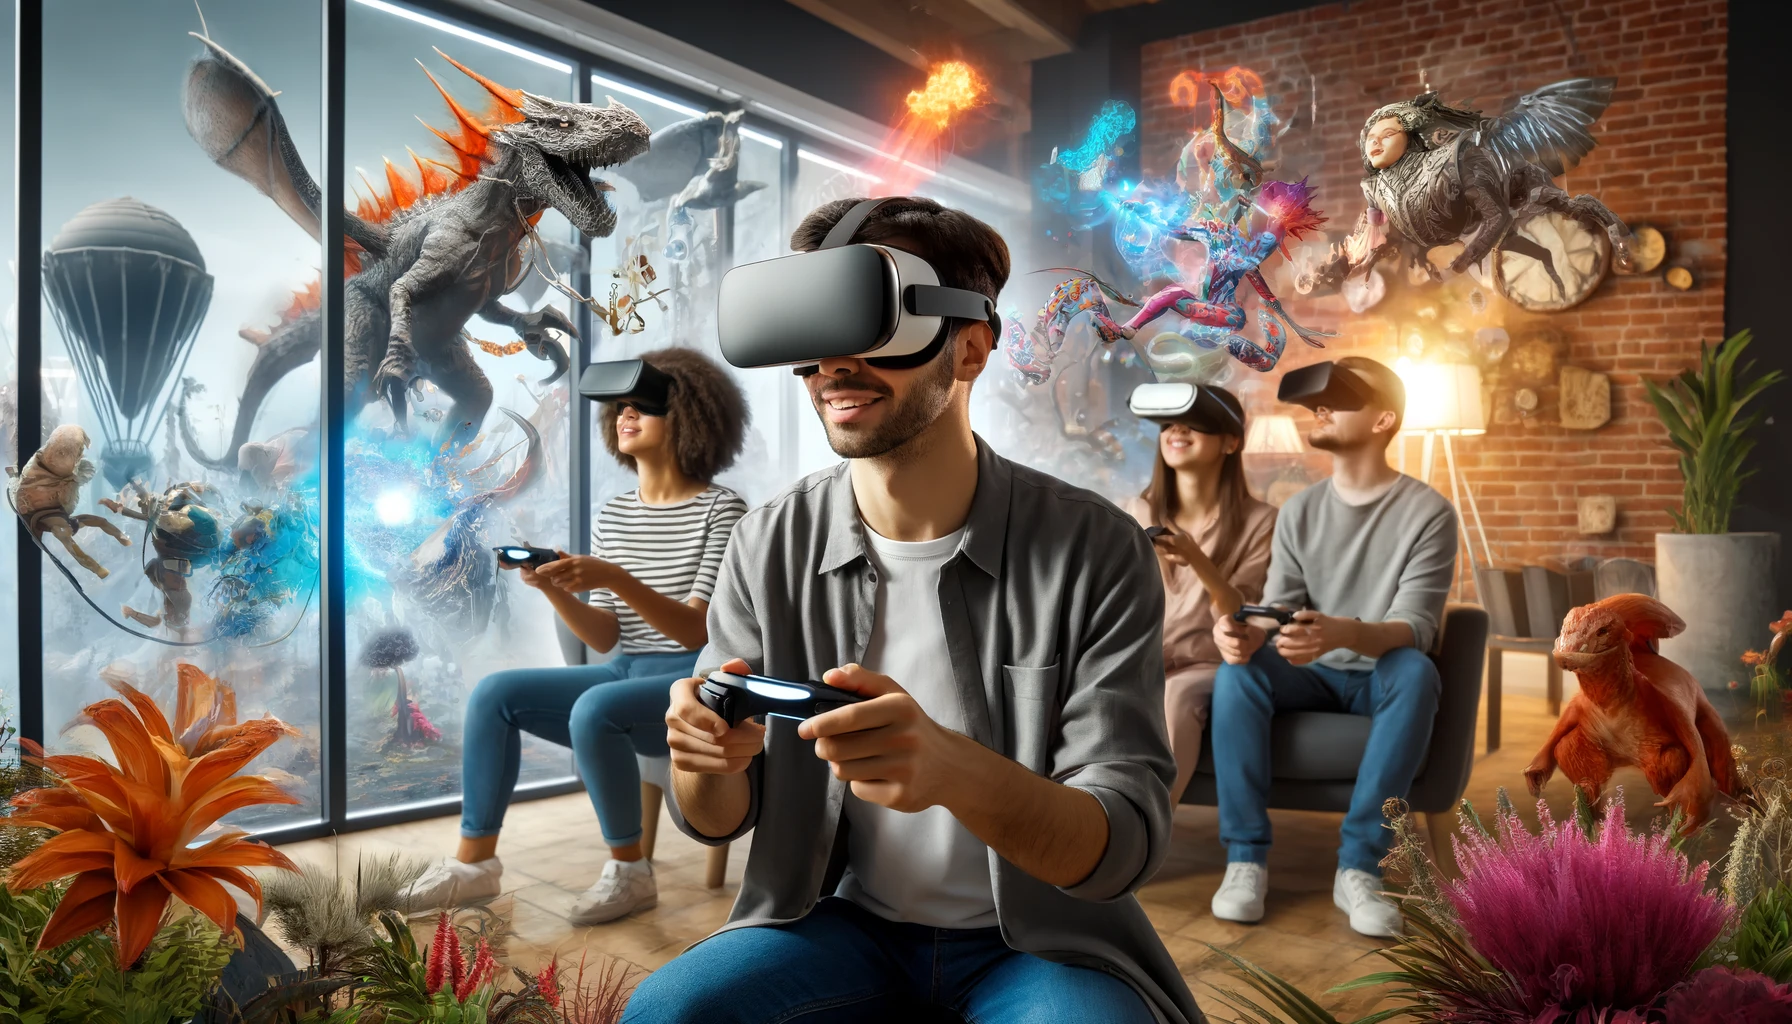 Usuarios disfrutando de un juego de realidad virtual en una sala de estar moderna. La imagen muestra a varios jóvenes de diversas etnias usando cascos de VR, rodeados de elementos virtuales como criaturas fantásticas y paisajes exóticos, integrados en el espacio físico a través de efectos de malla 3D.